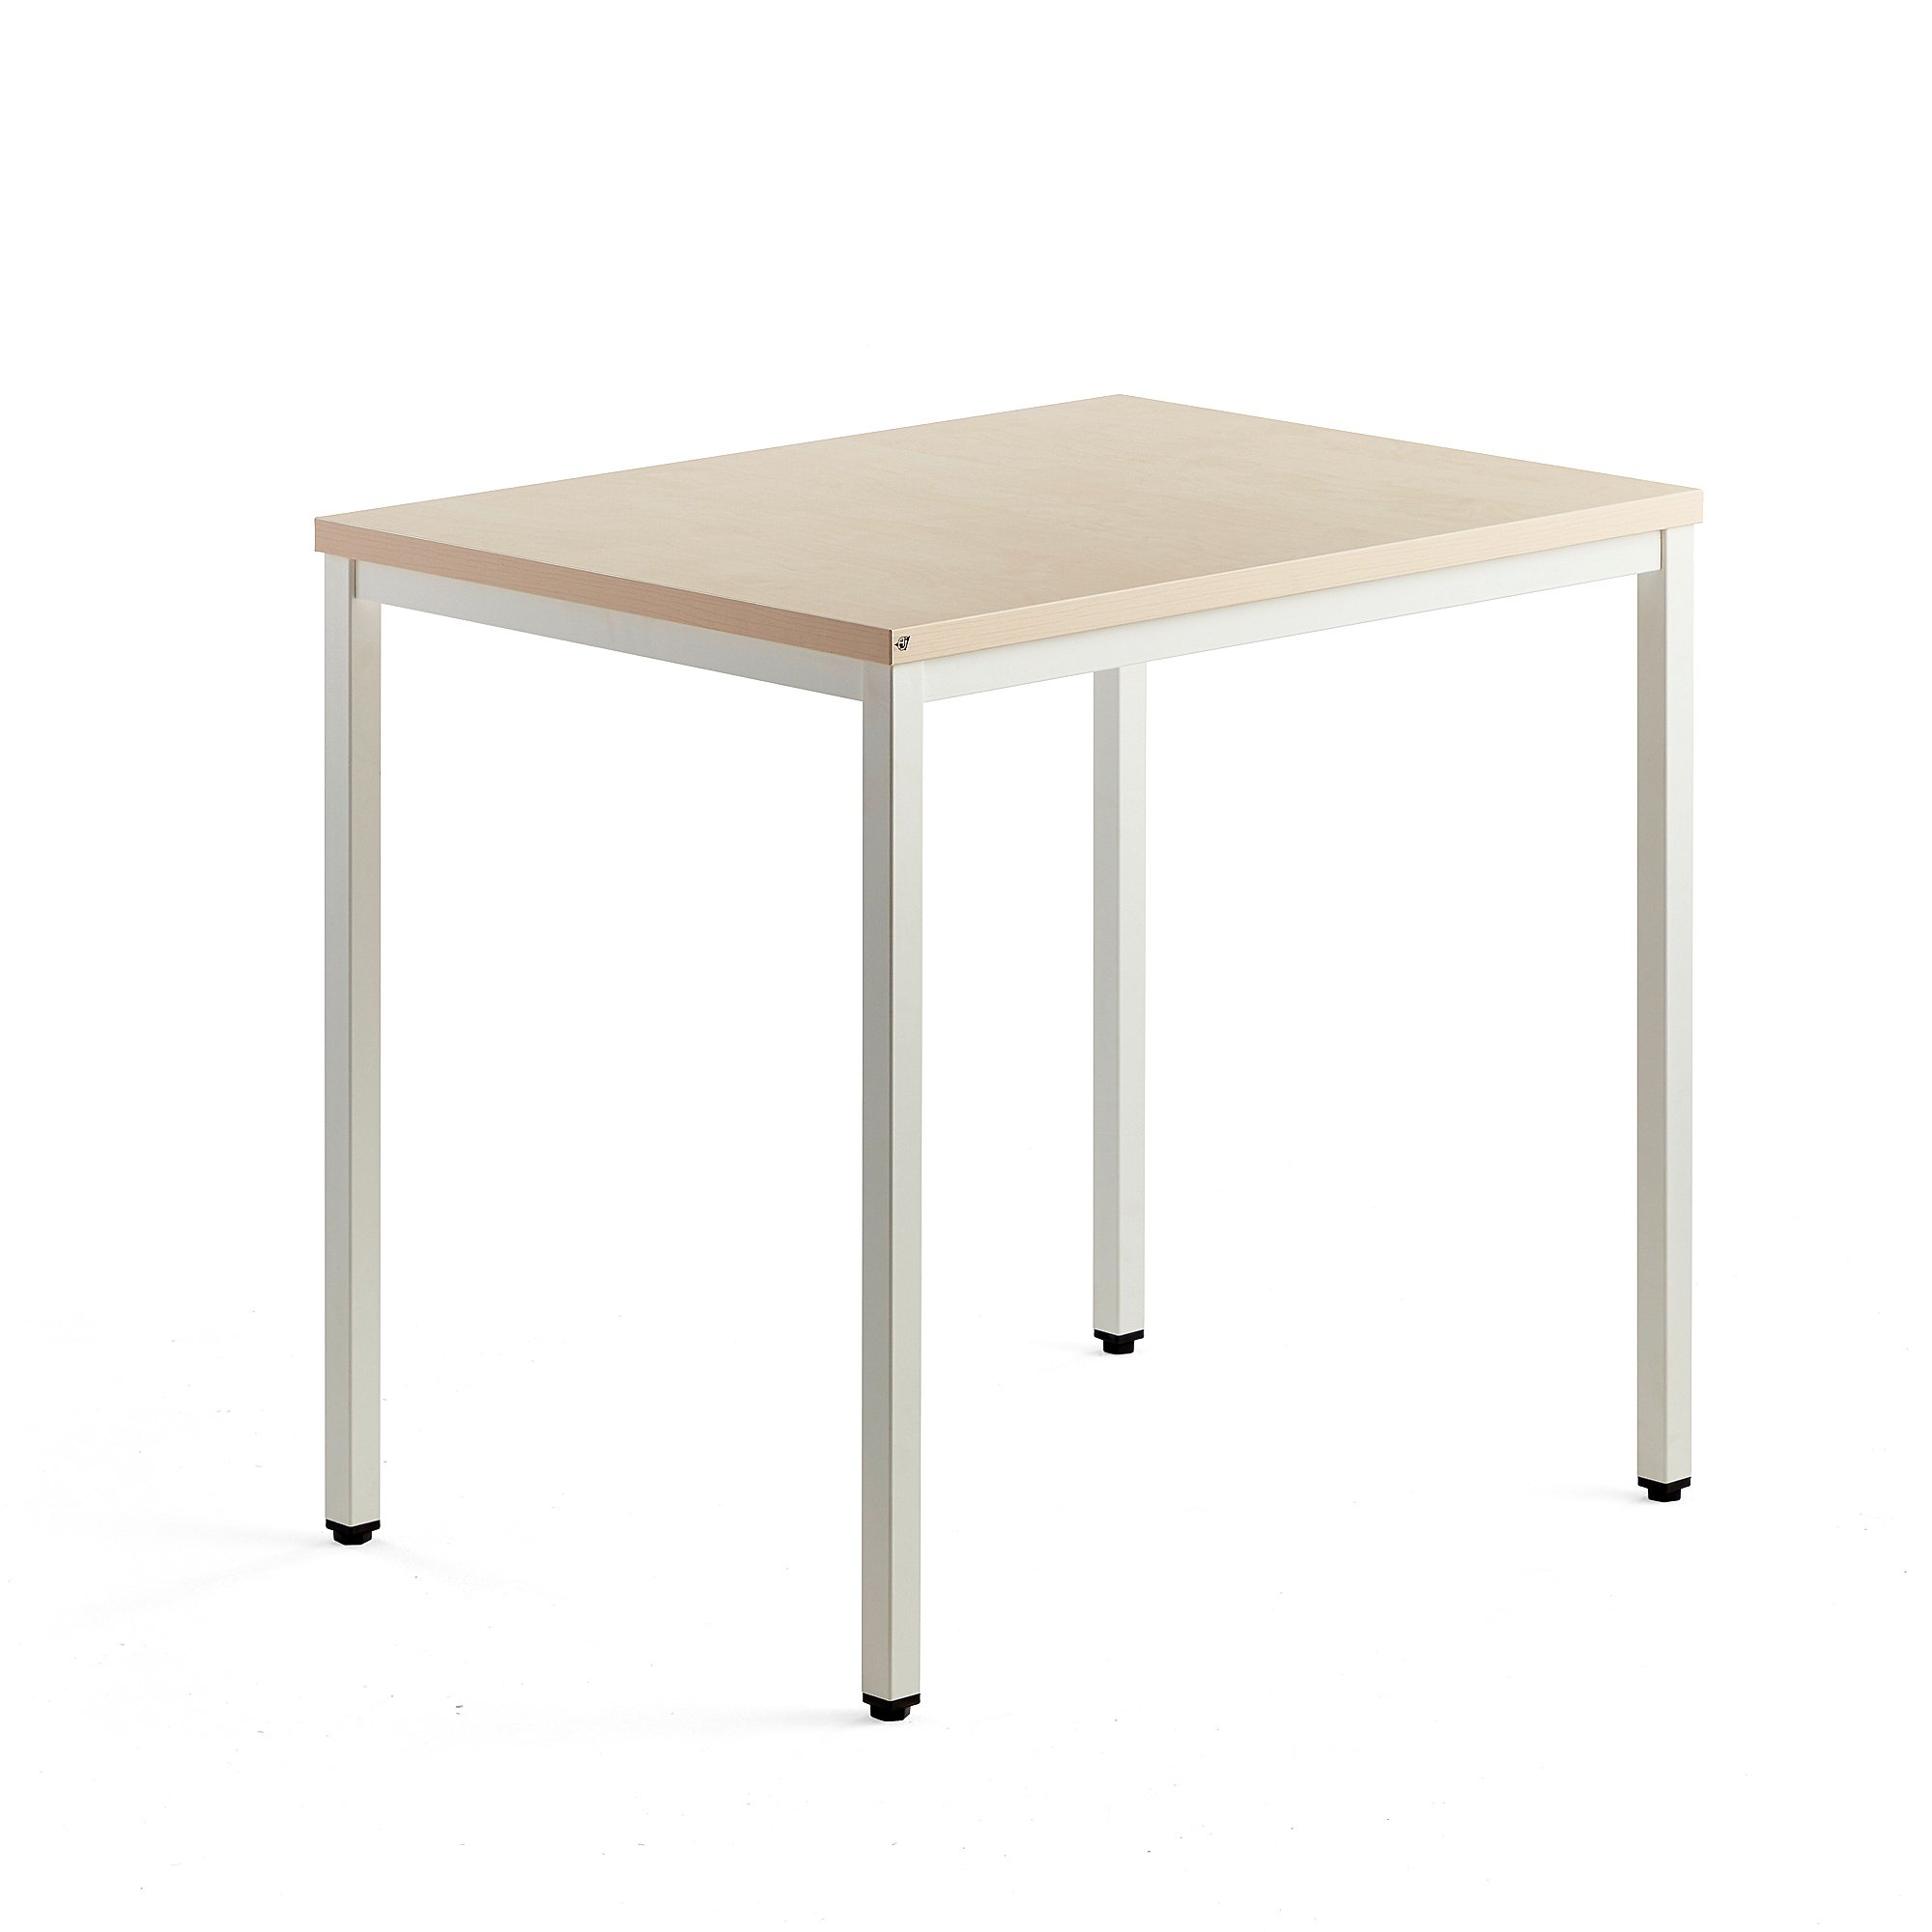 Přídavný stůl QBUS, 4 nohy, 800x600 mm, bílý rám, bříza